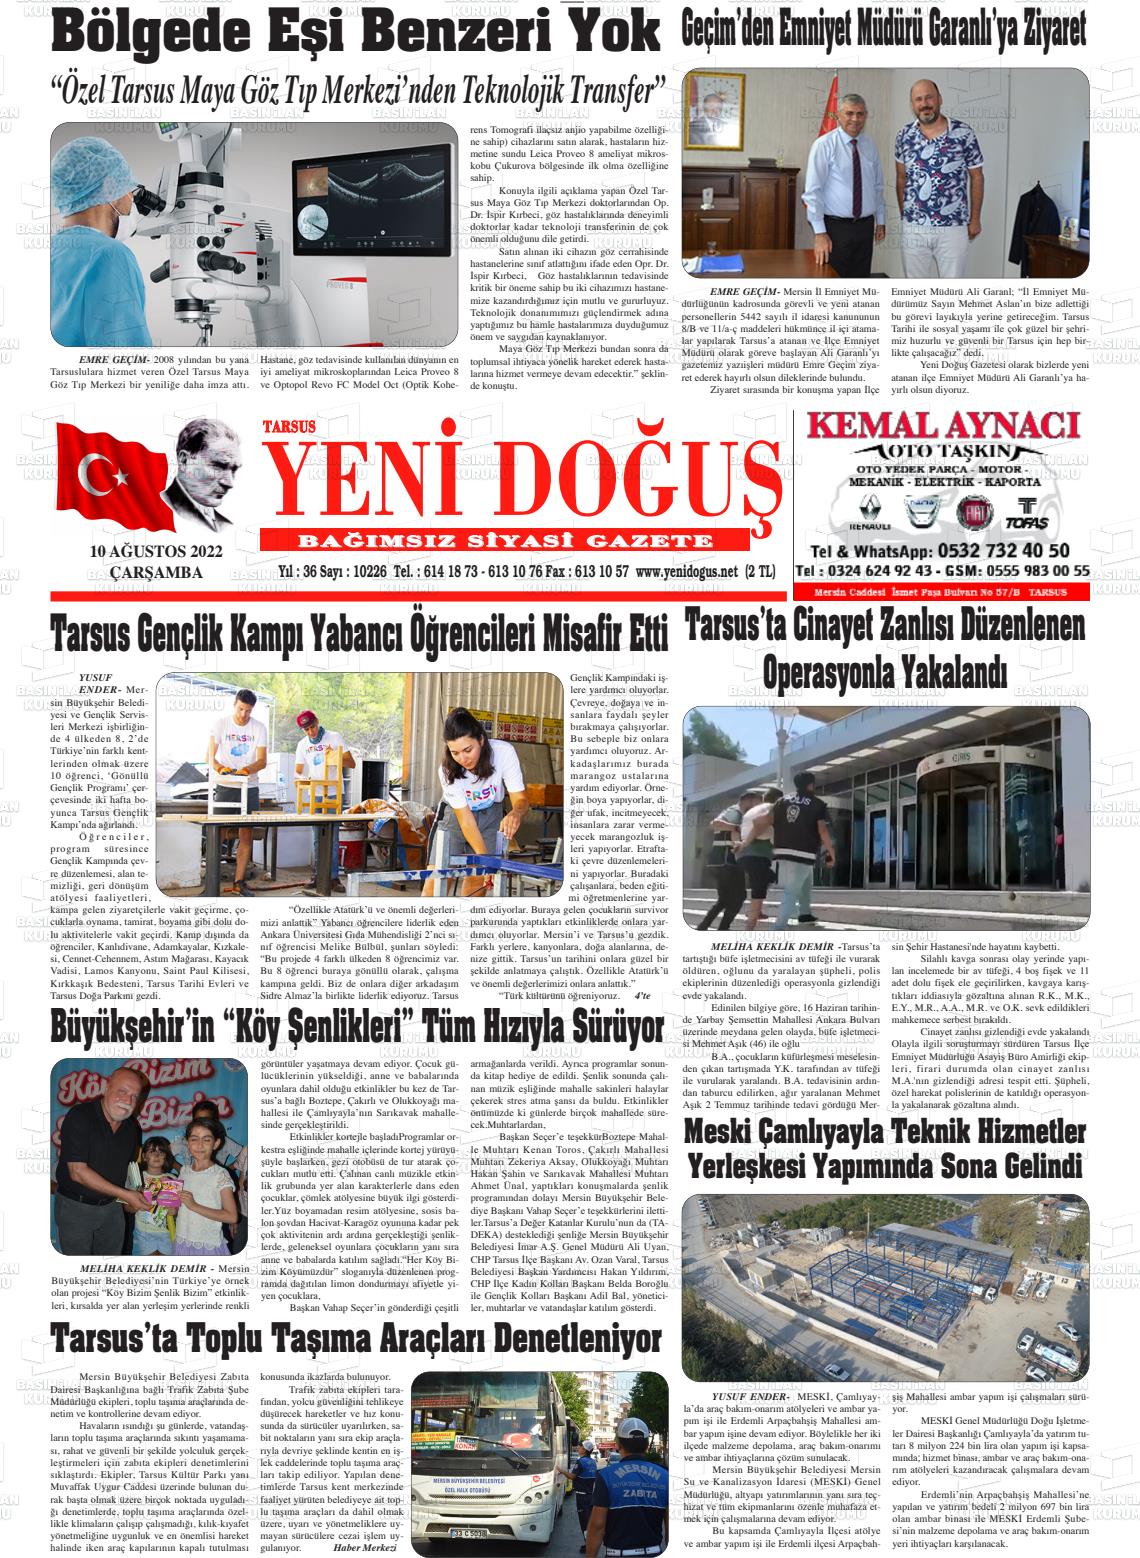 10 Ağustos 2022 Tarsus Yeni Doğuş Gazete Manşeti